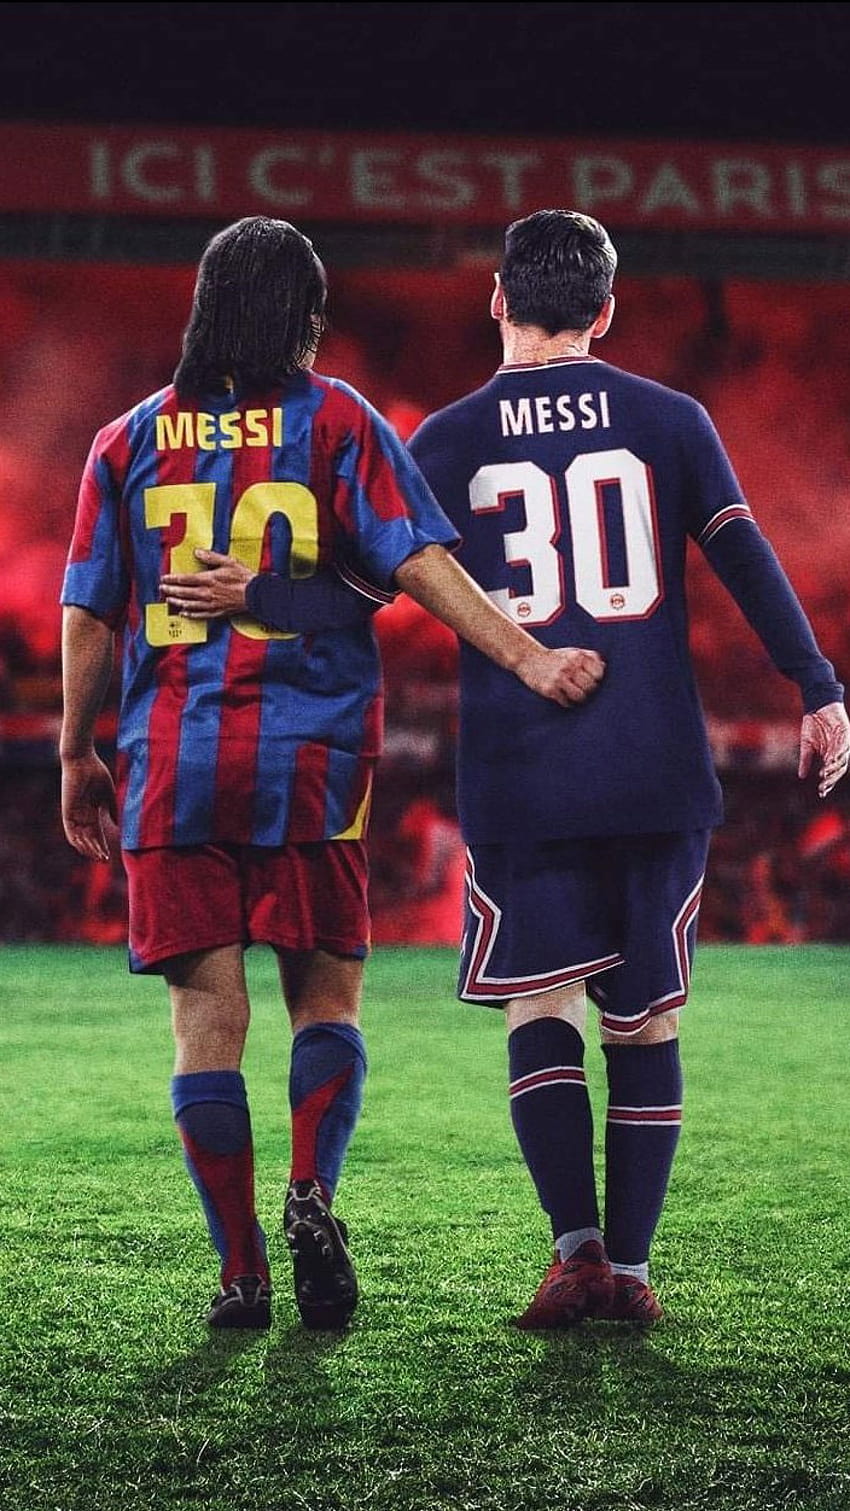 Với những hình ảnh của Messi và Ronaldinho trong áo đấu của Paris Saint Germain, bạn sẽ được trải nghiệm một sức mạnh không thể phủ nhận của cặp đôi siêu sao này trên sân cỏ. Chắc chắn đó sẽ là một trải nghiệm đáng nhớ cho bạn.